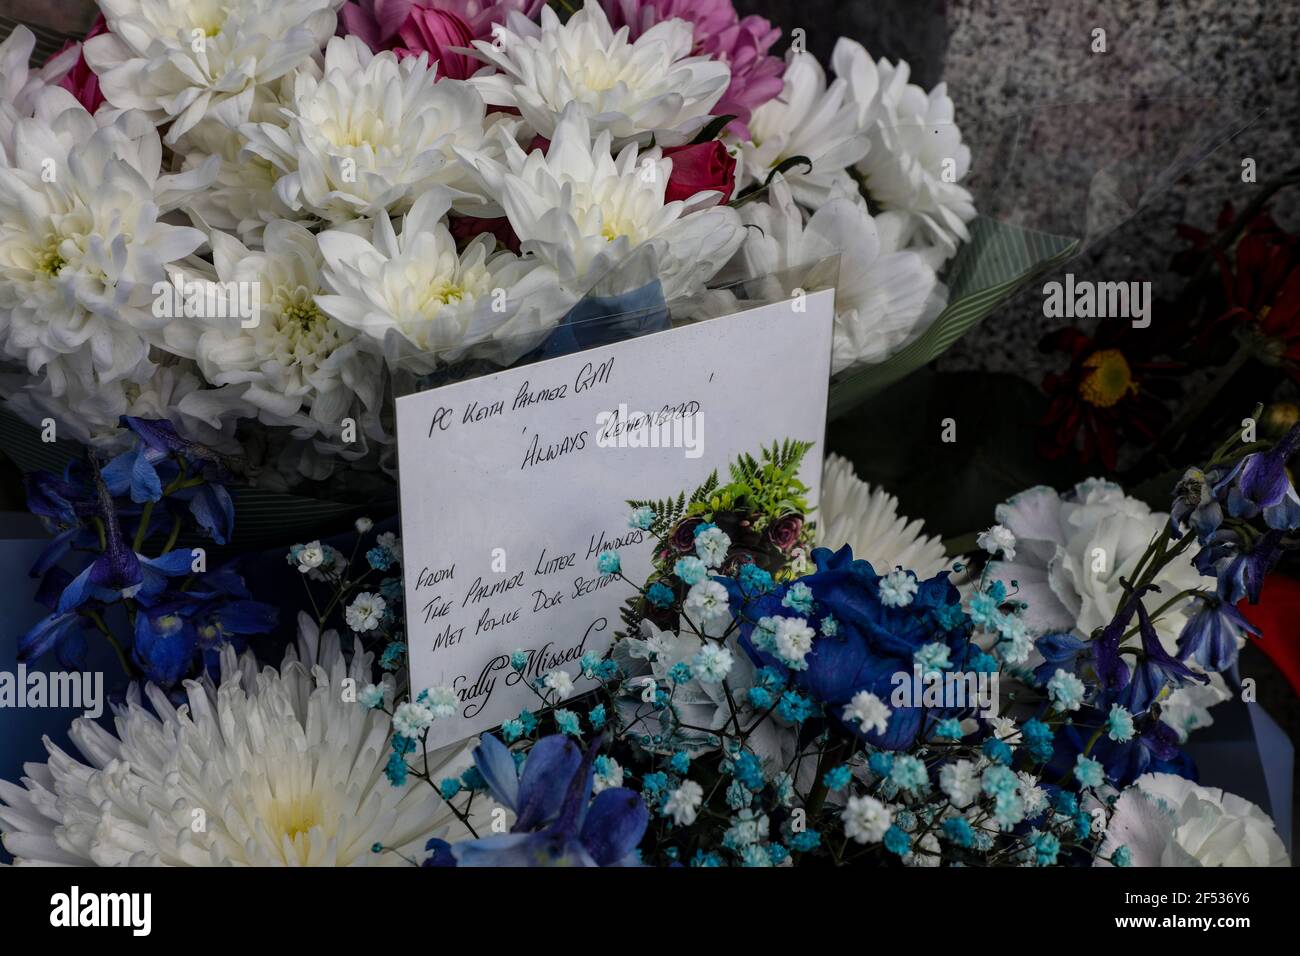 Les hommages floraux pour le PC Keith Palmer sont laissés sur la place du Parlement à l'occasion de l'anniversaire de l'attaque de terreur du pont de Westminster. Banque D'Images